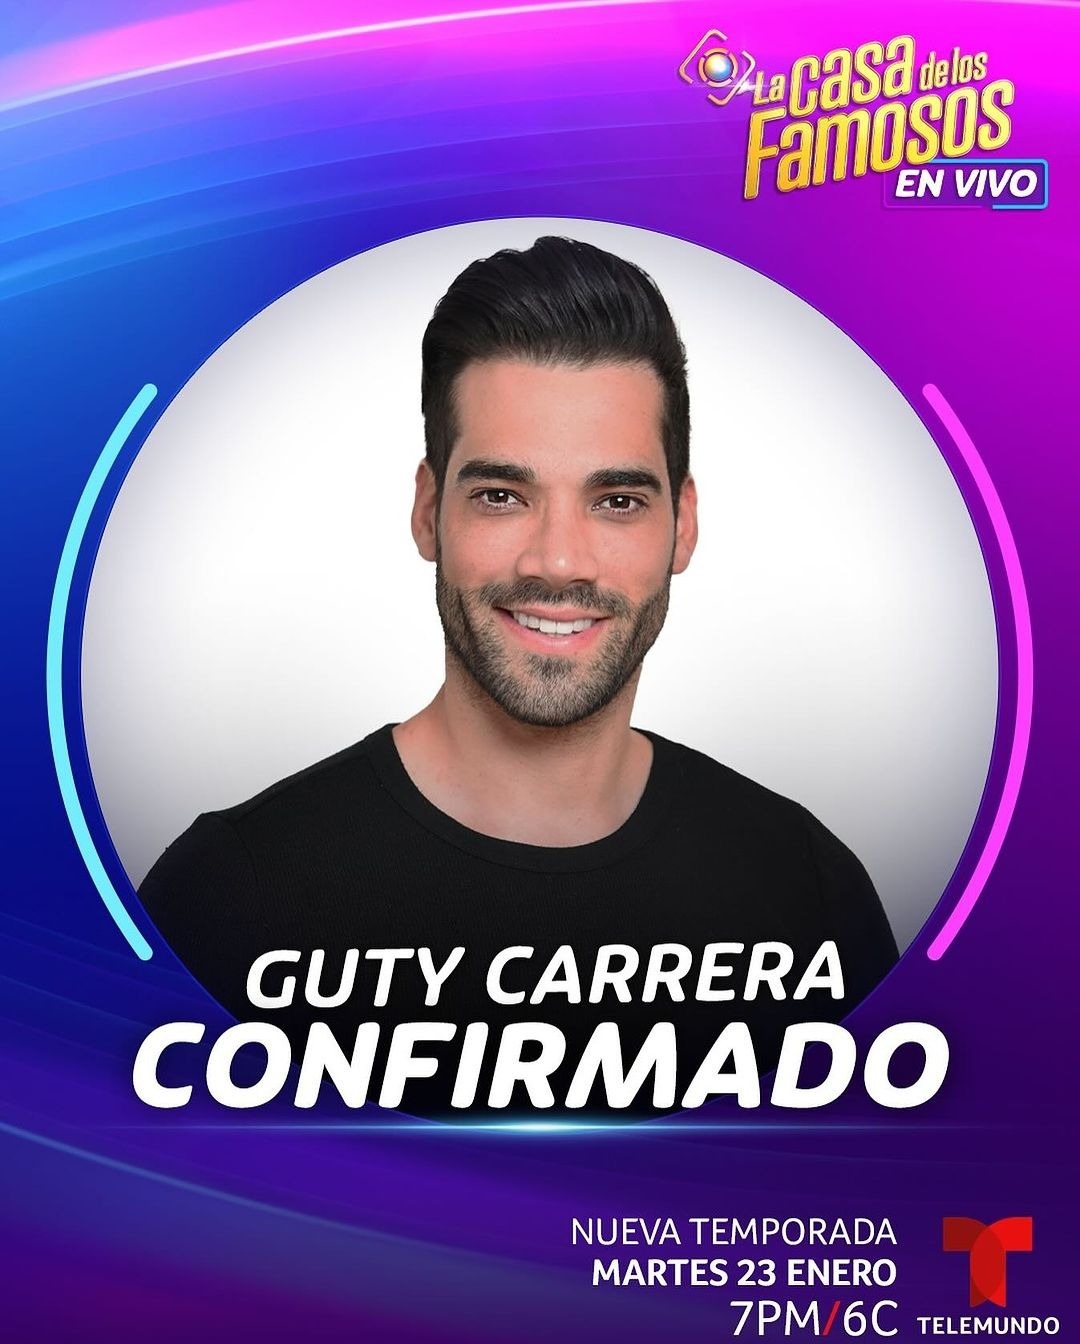 Guty Carrera fue confirmado en 'La Casa de los Famosos' de Telemundo. Instagram